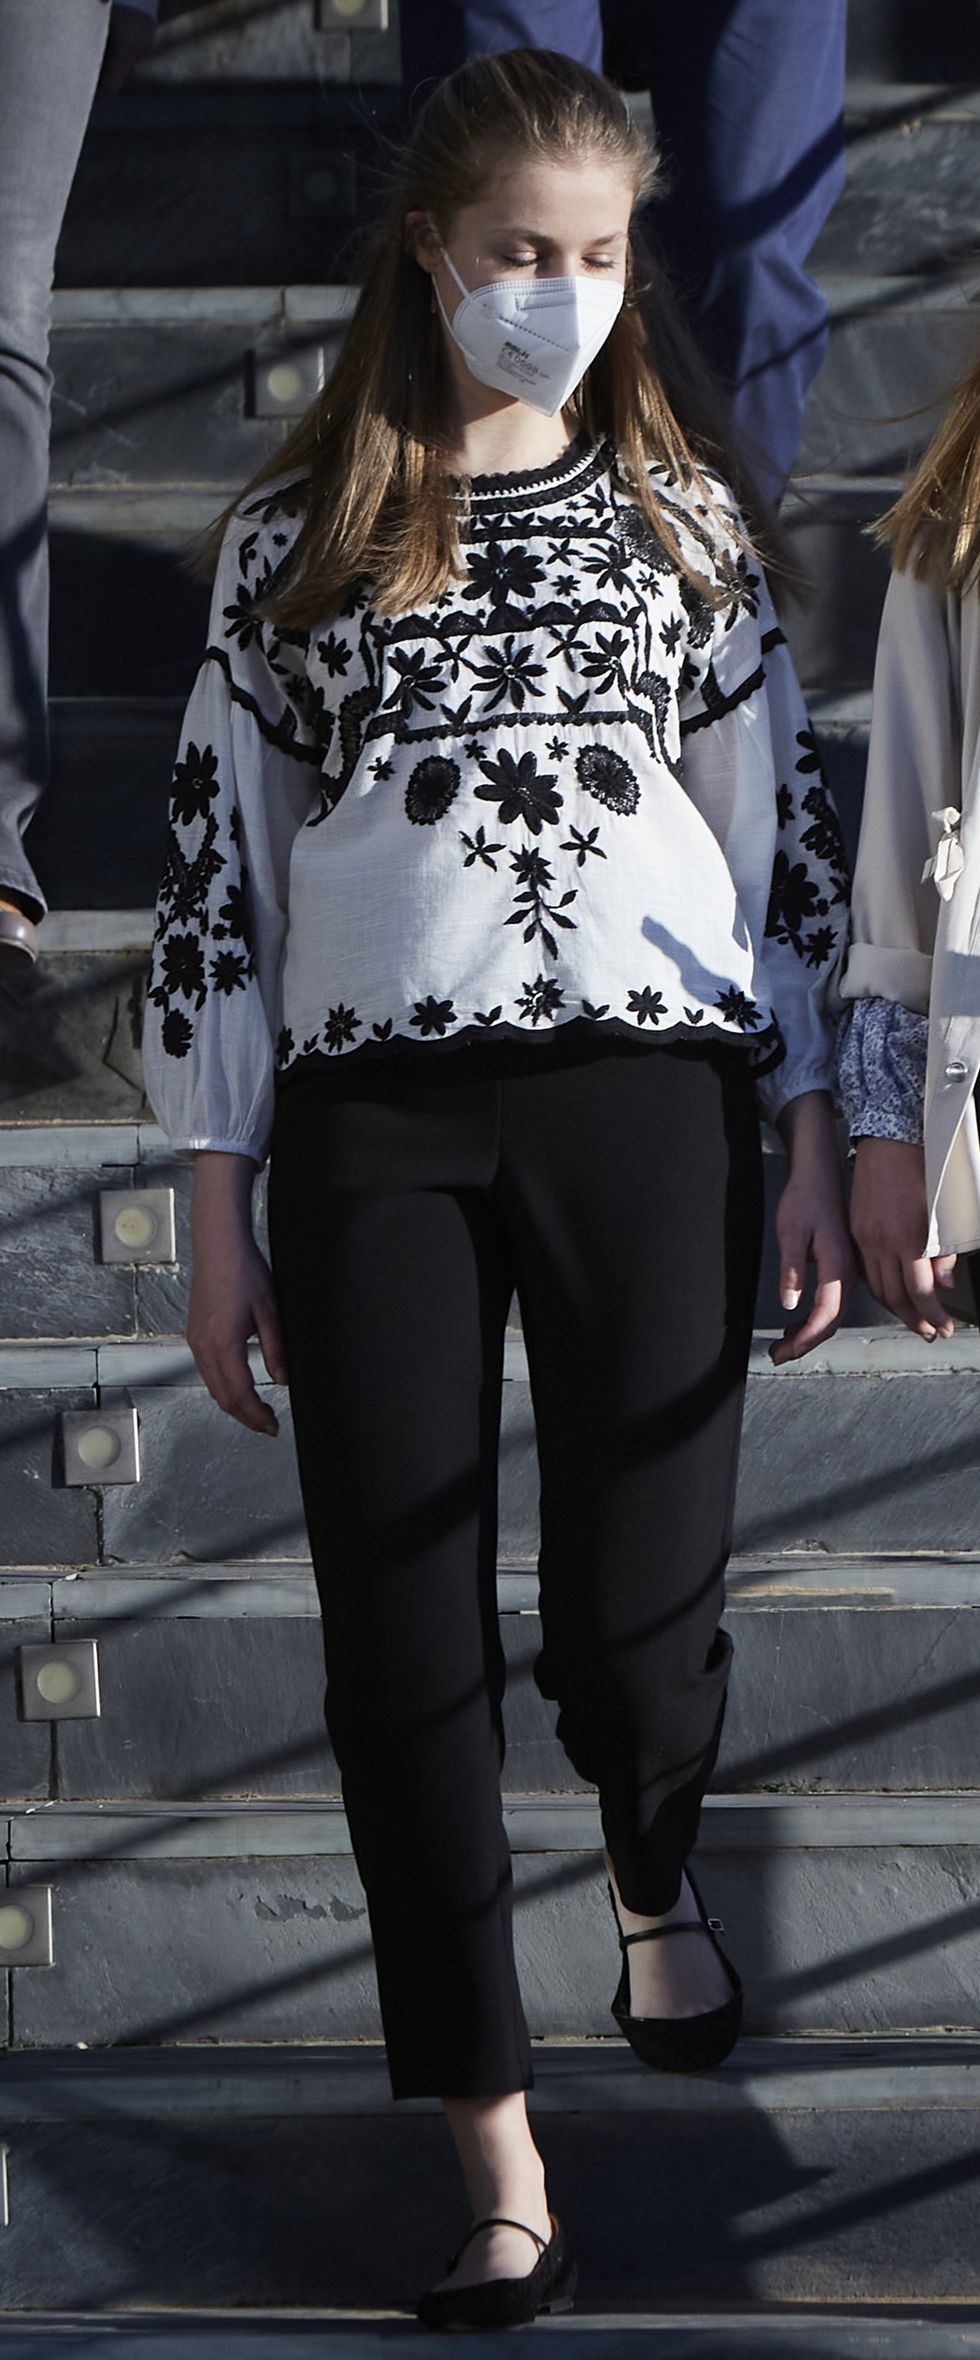 la infanta sofia con lusa de base blanca con bordados florales en negro de la firma española de moda sfera y pantalones negros en la visita al centro de refugiados ucranianos de madrid